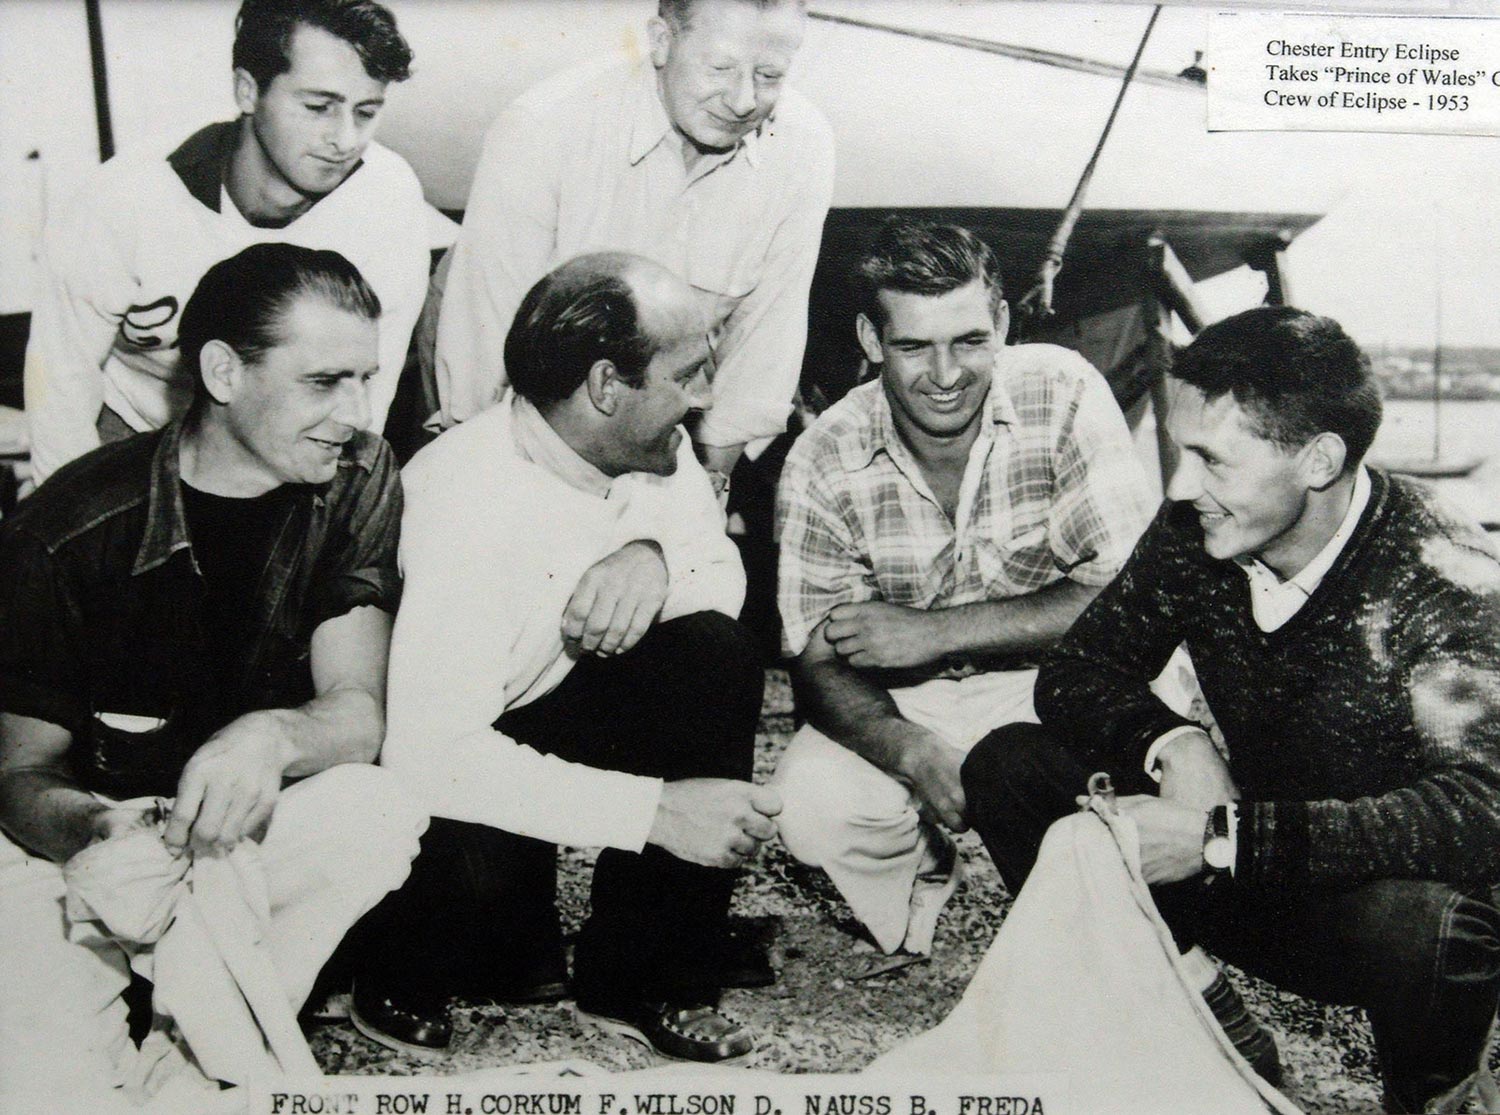 Crew of Eclipse, 1953